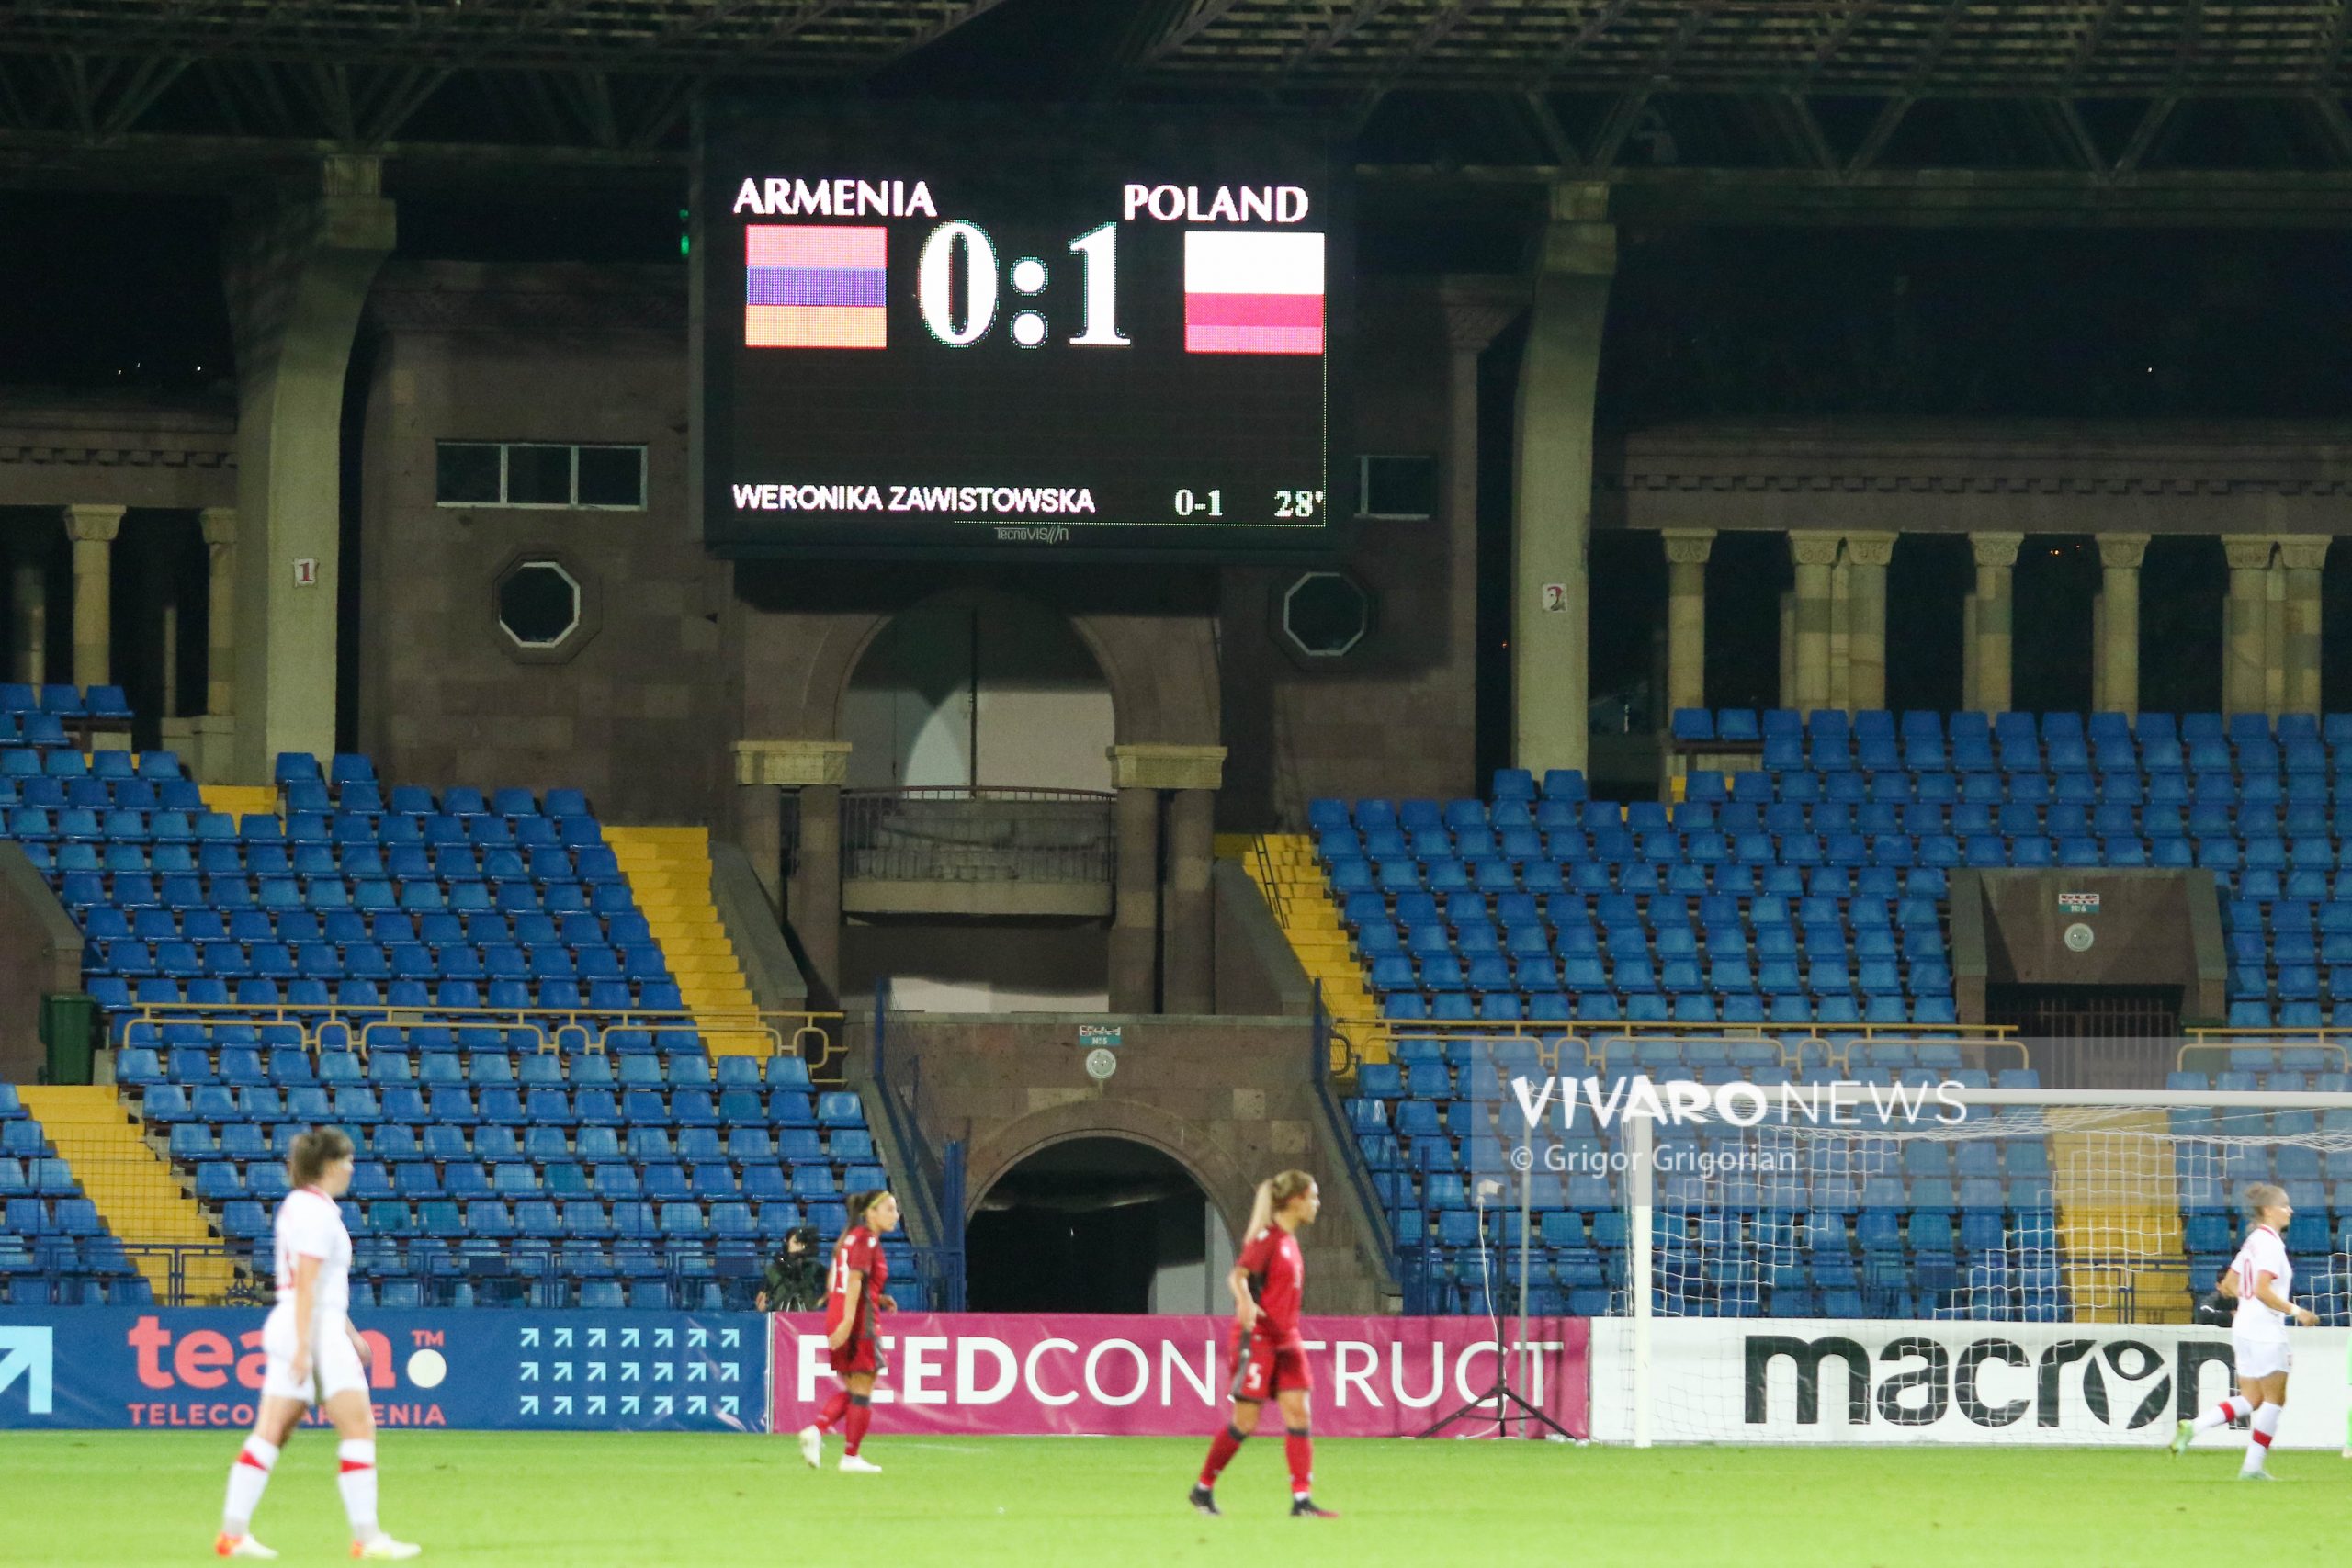 21.09.2021 Armenia 0 1 Poland women 28 scaled - Արժանի պայքար, բայց պարտություն. VNews-ի ֆոտոշարքը Հայաստան - Լեհաստան խաղից